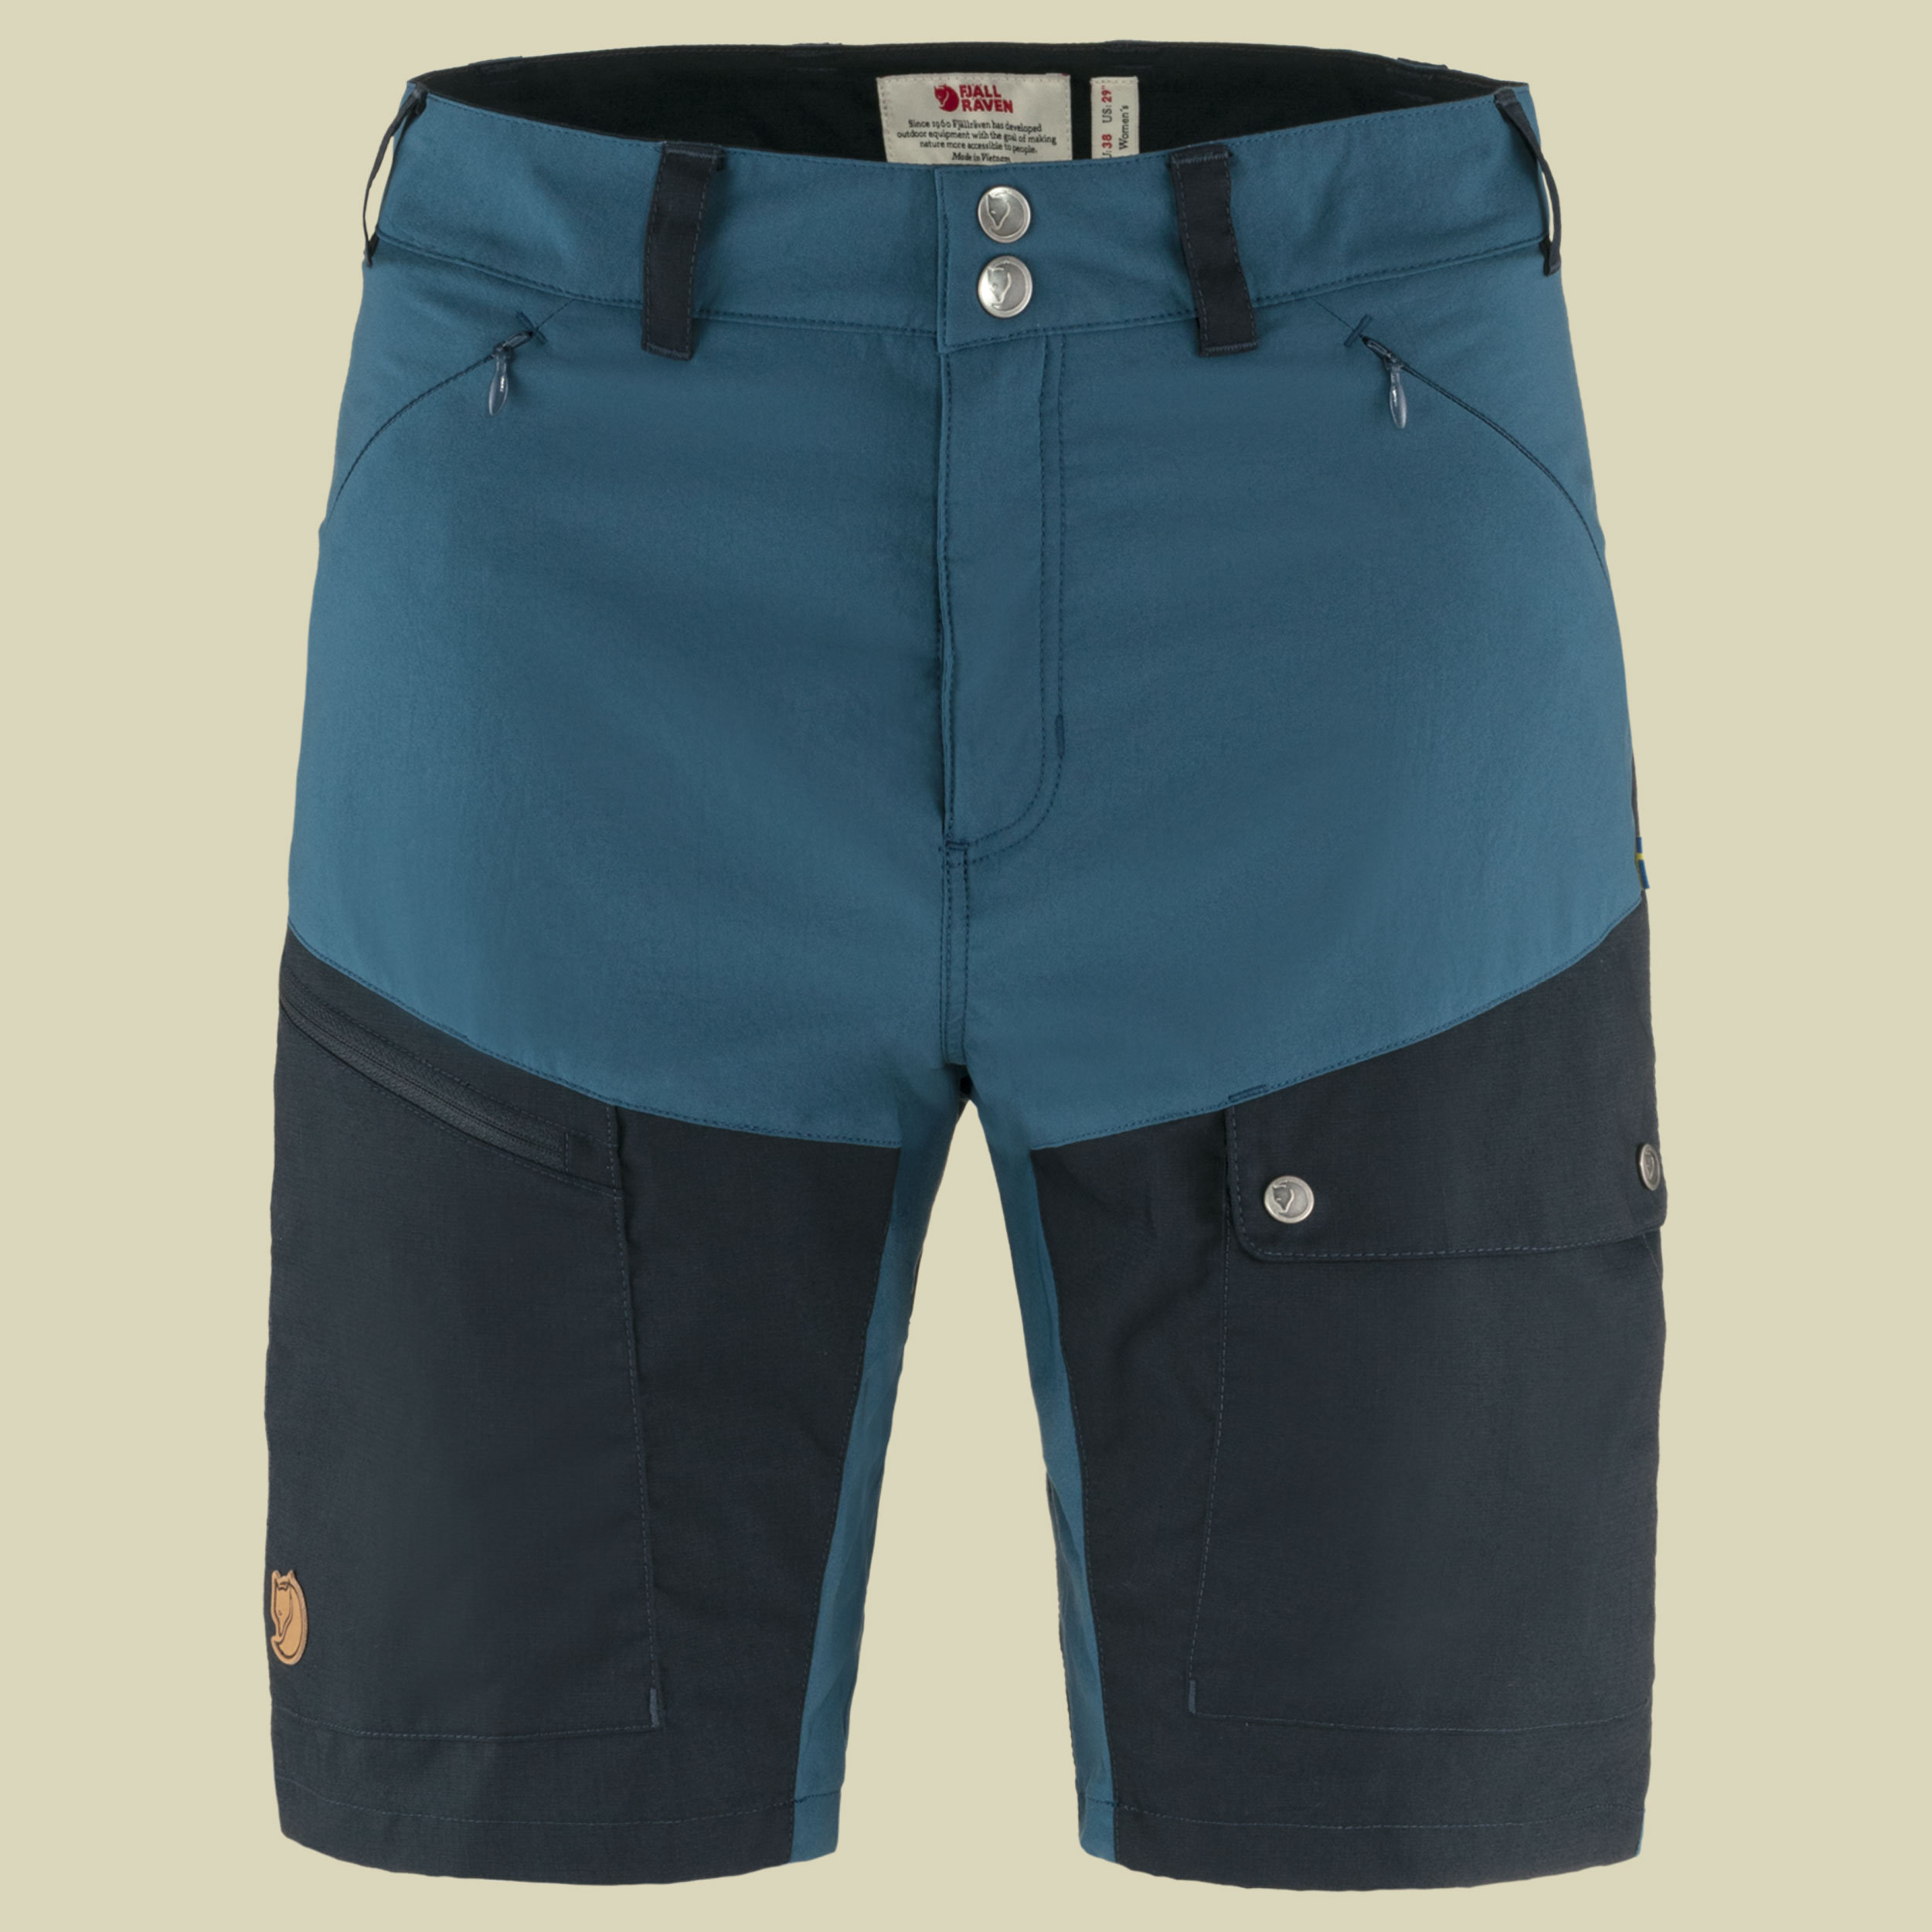 Abisko Midsummer Shorts Women Größe 42 Farbe indigo blue-dark navy